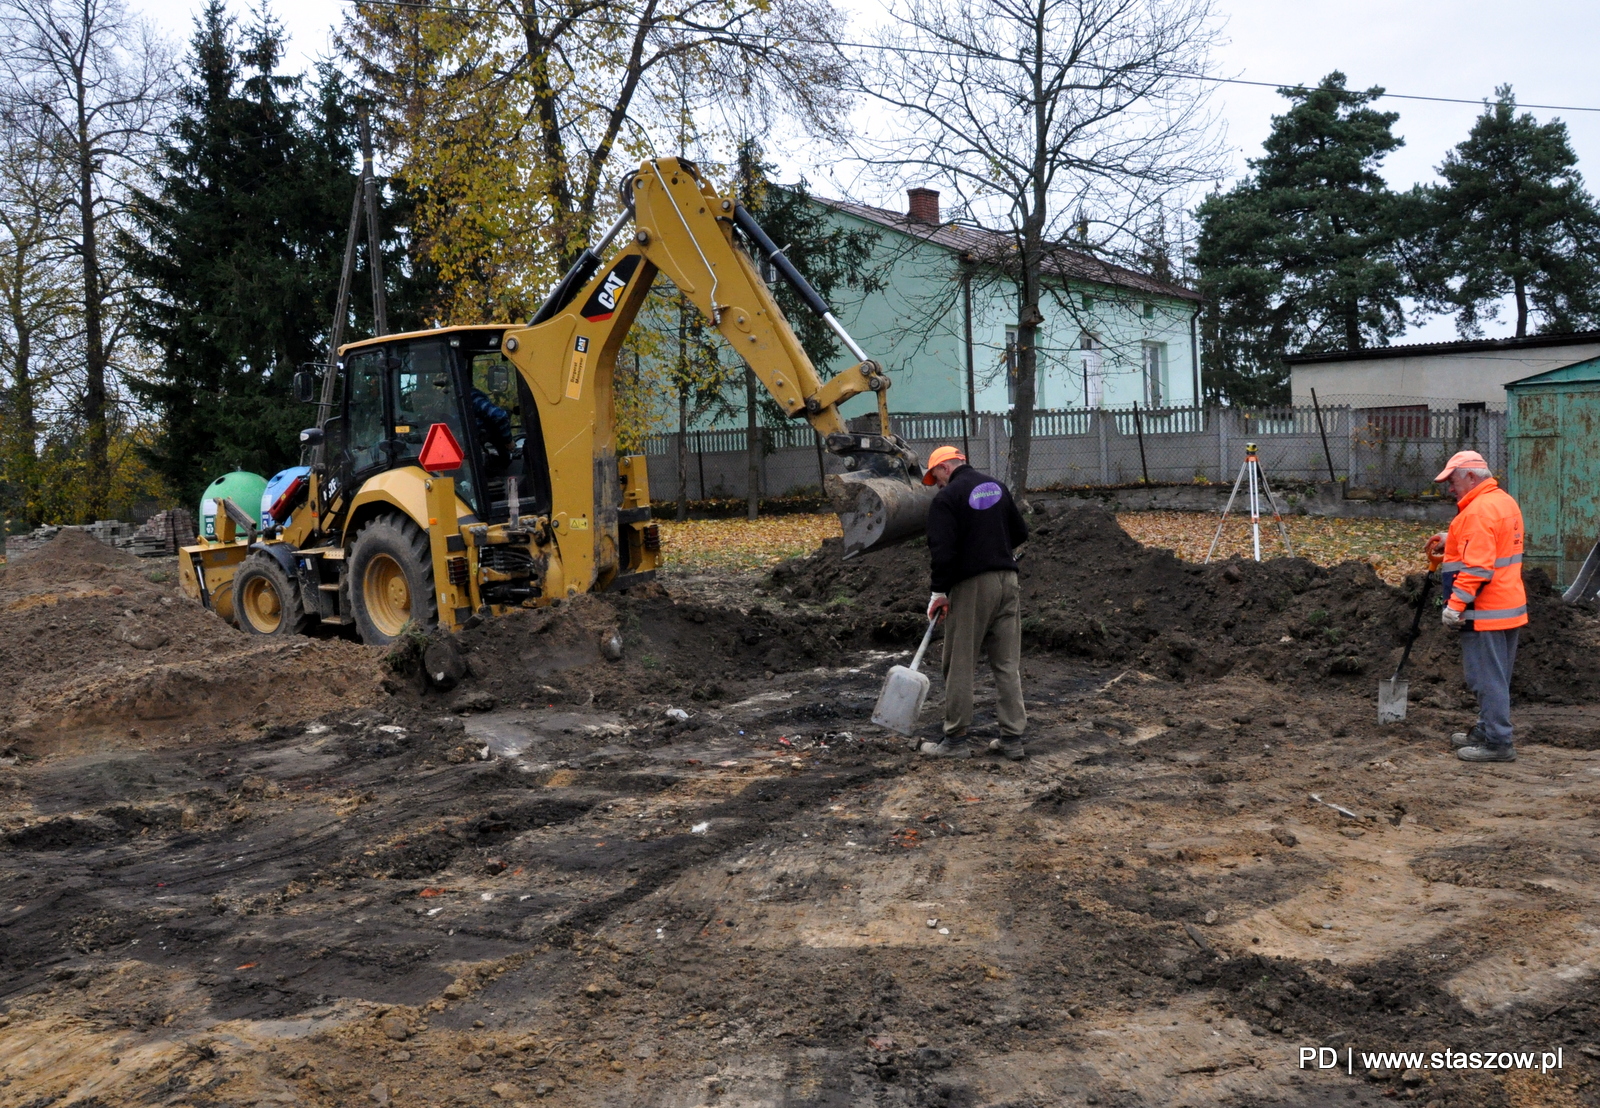 Prace przy utwardzaniu terenu z przeznaczeniem na miejsca postojowe przy Zespole Placówek Oświatowych w Mostkach